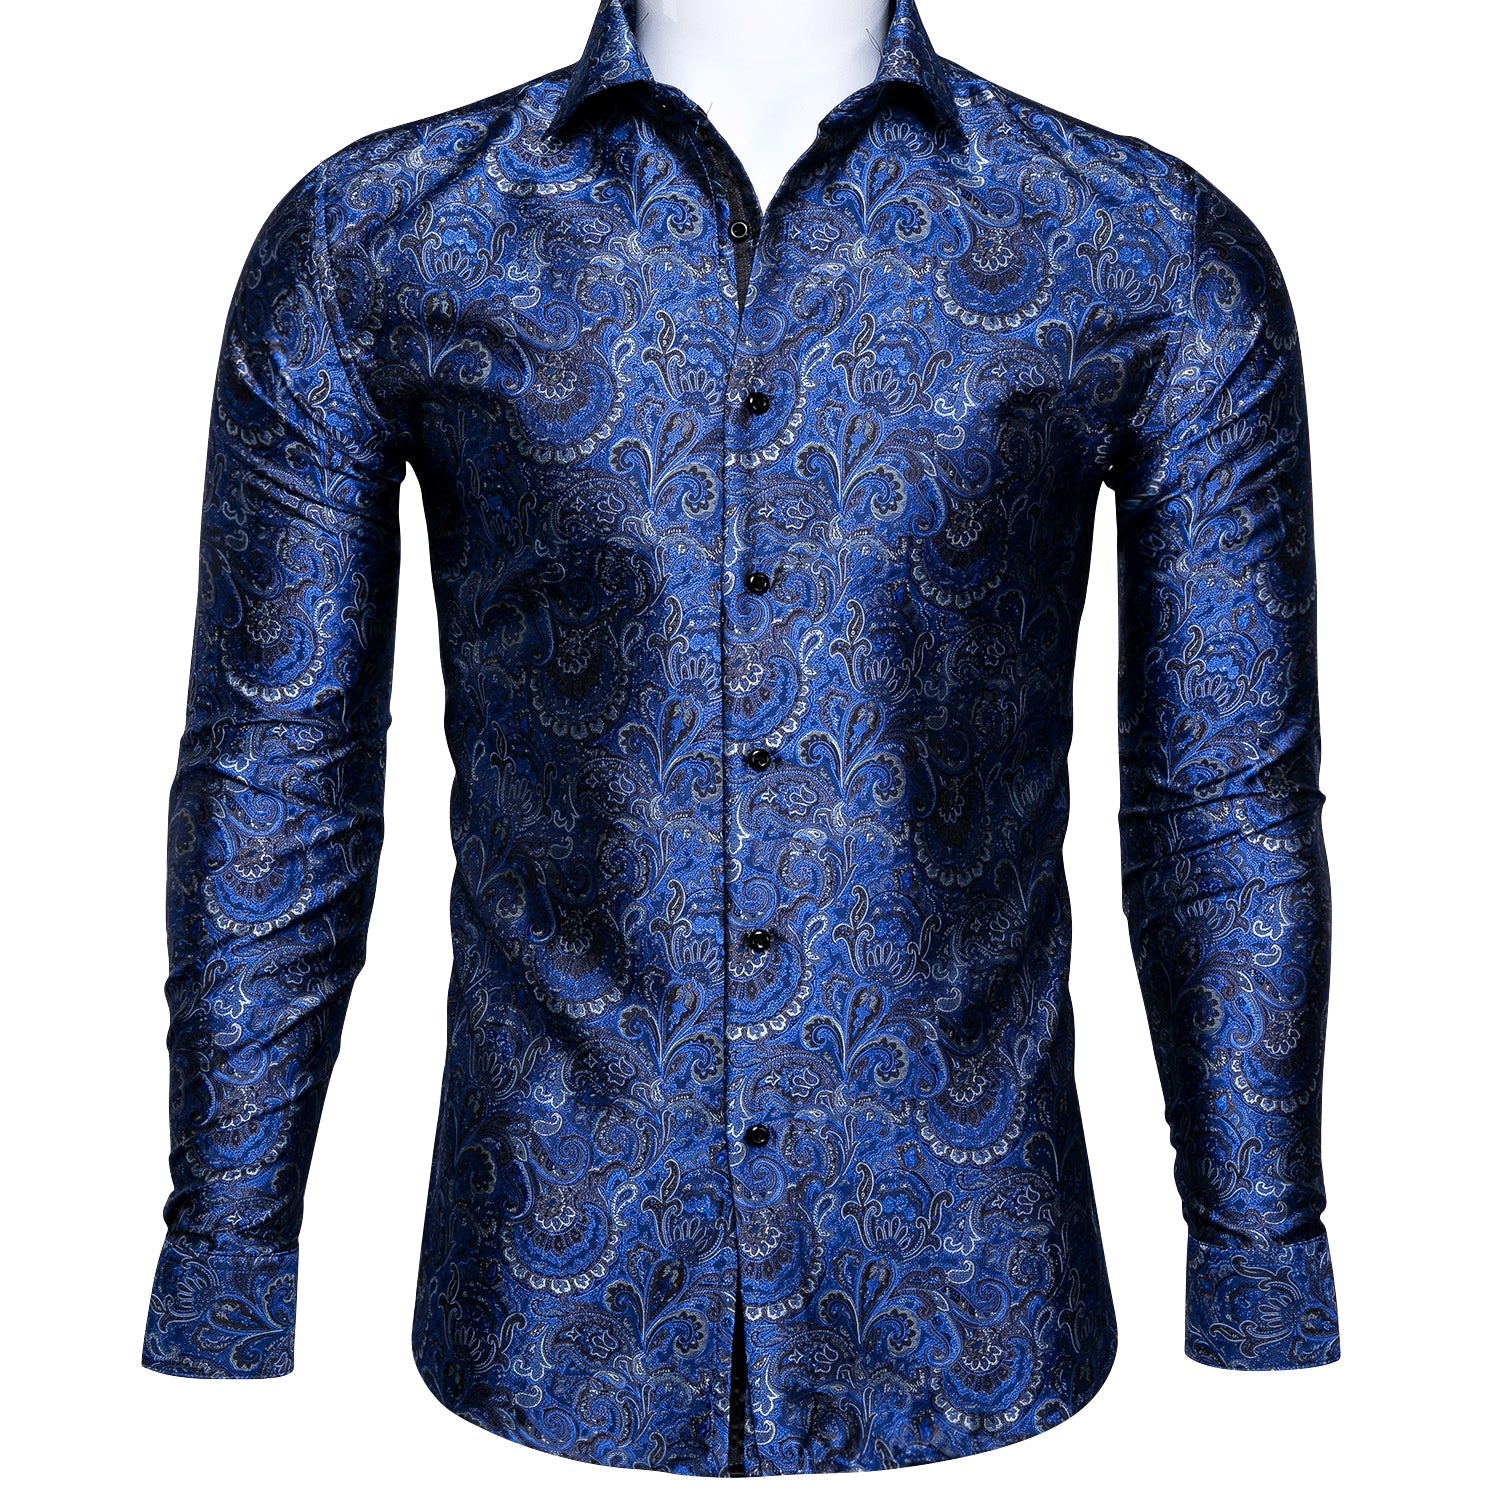 Barry.wang Light Blue Floral Silk Shirt